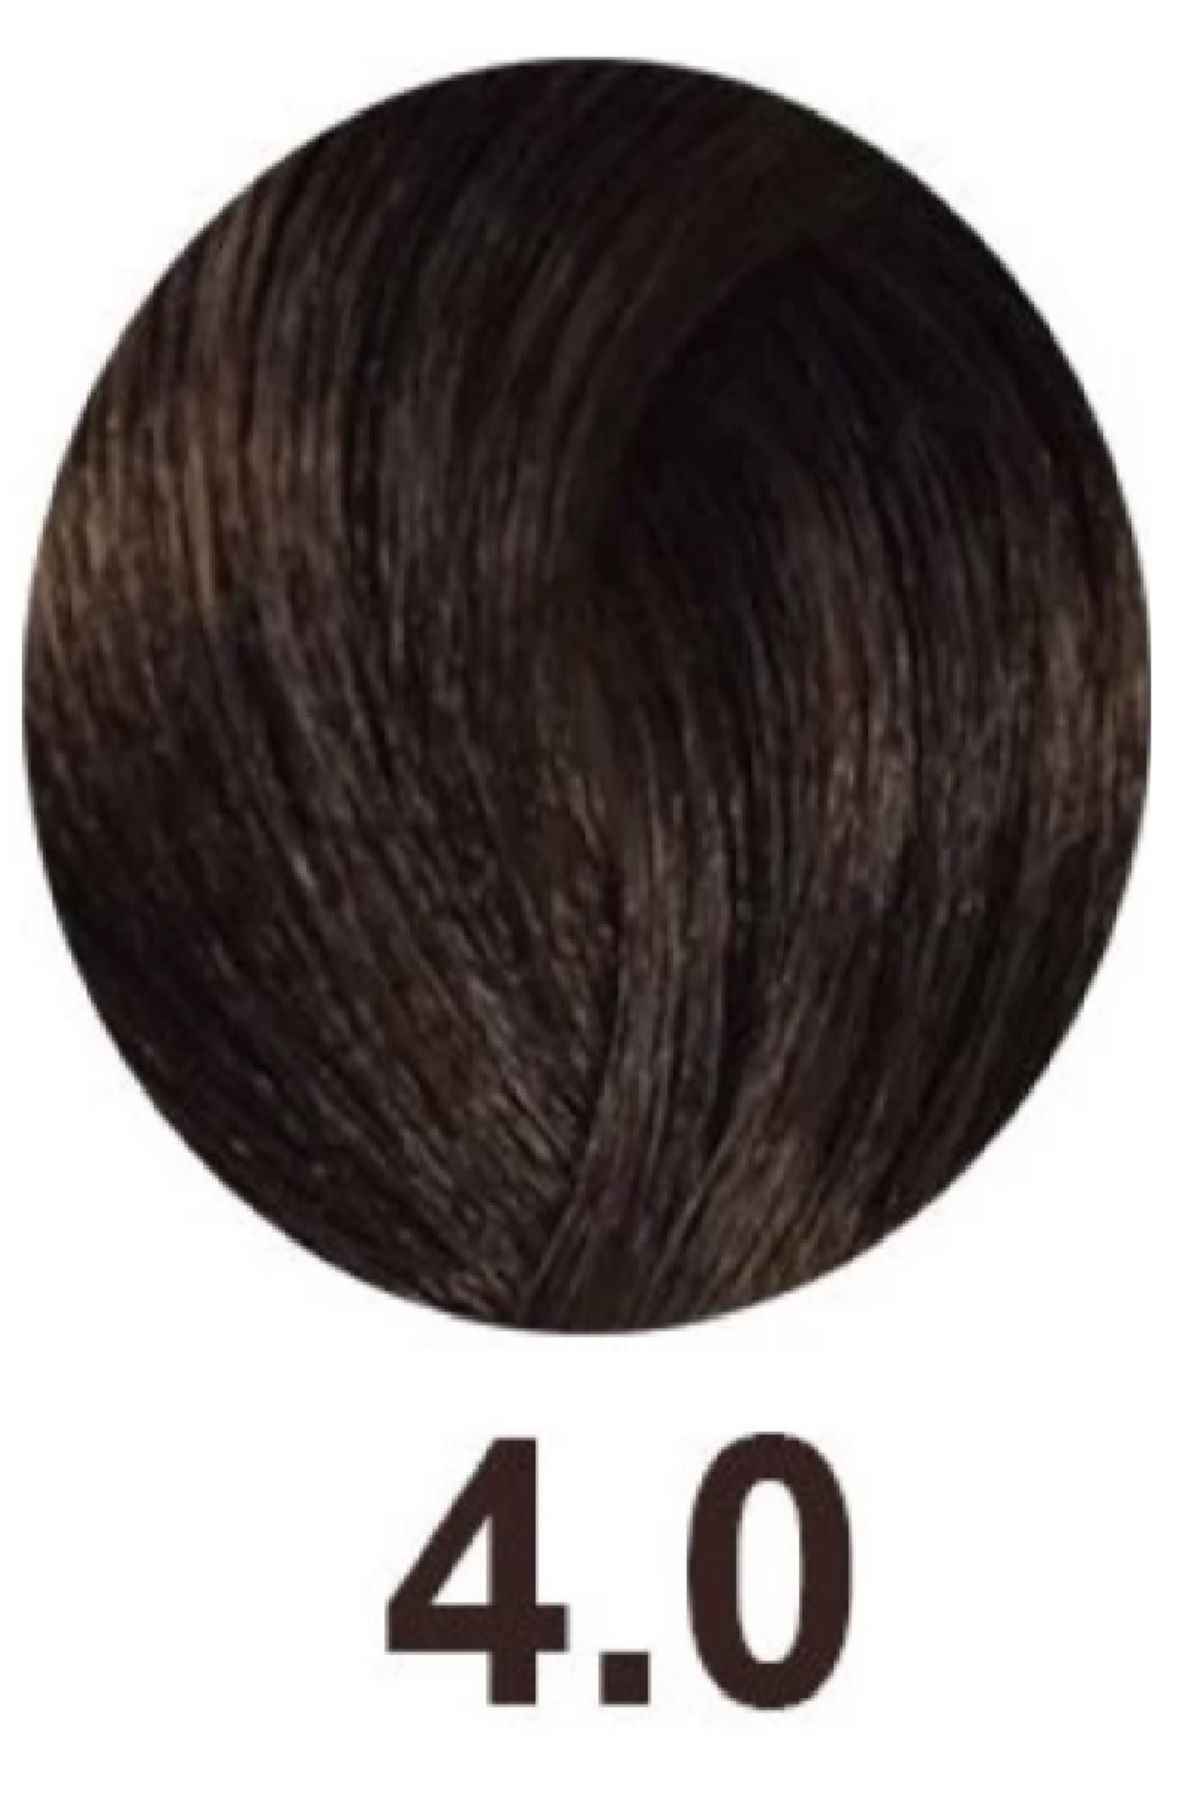 İNOA Inoa Oil Fortified Antioxidant Hair Dye 4.0 Intense Brown 60 gr. BSecrets.Y23